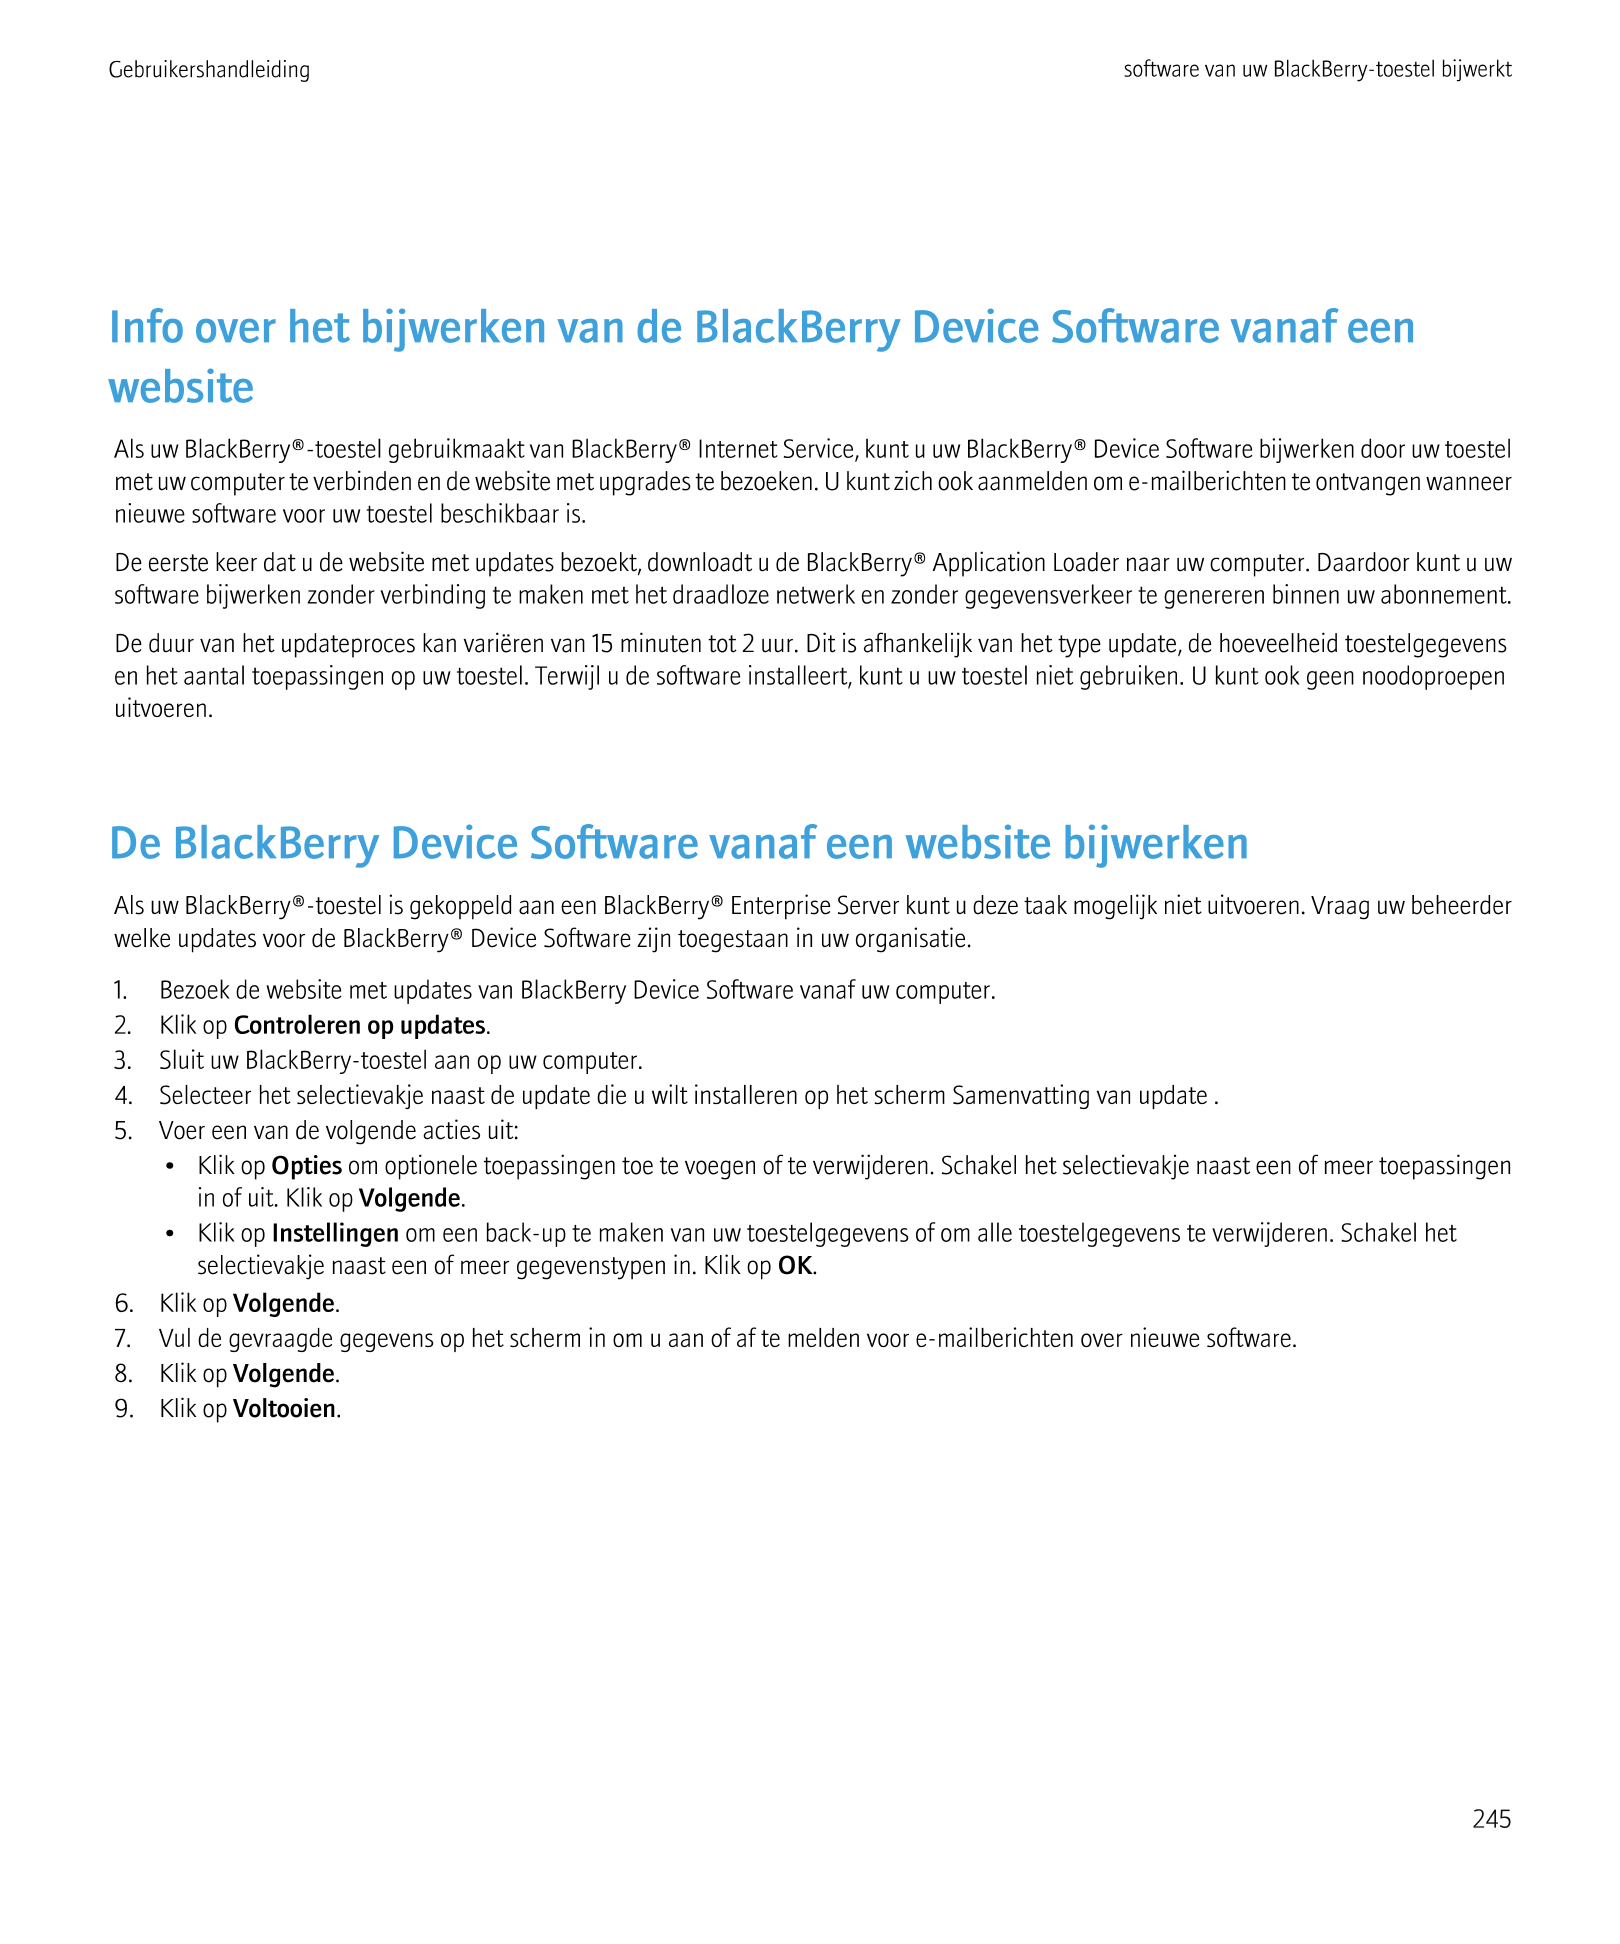 Gebruikershandleiding software van uw BlackBerry-toestel bijwerkt
Info over het bijwerken van de BlackBerry Device Software vana